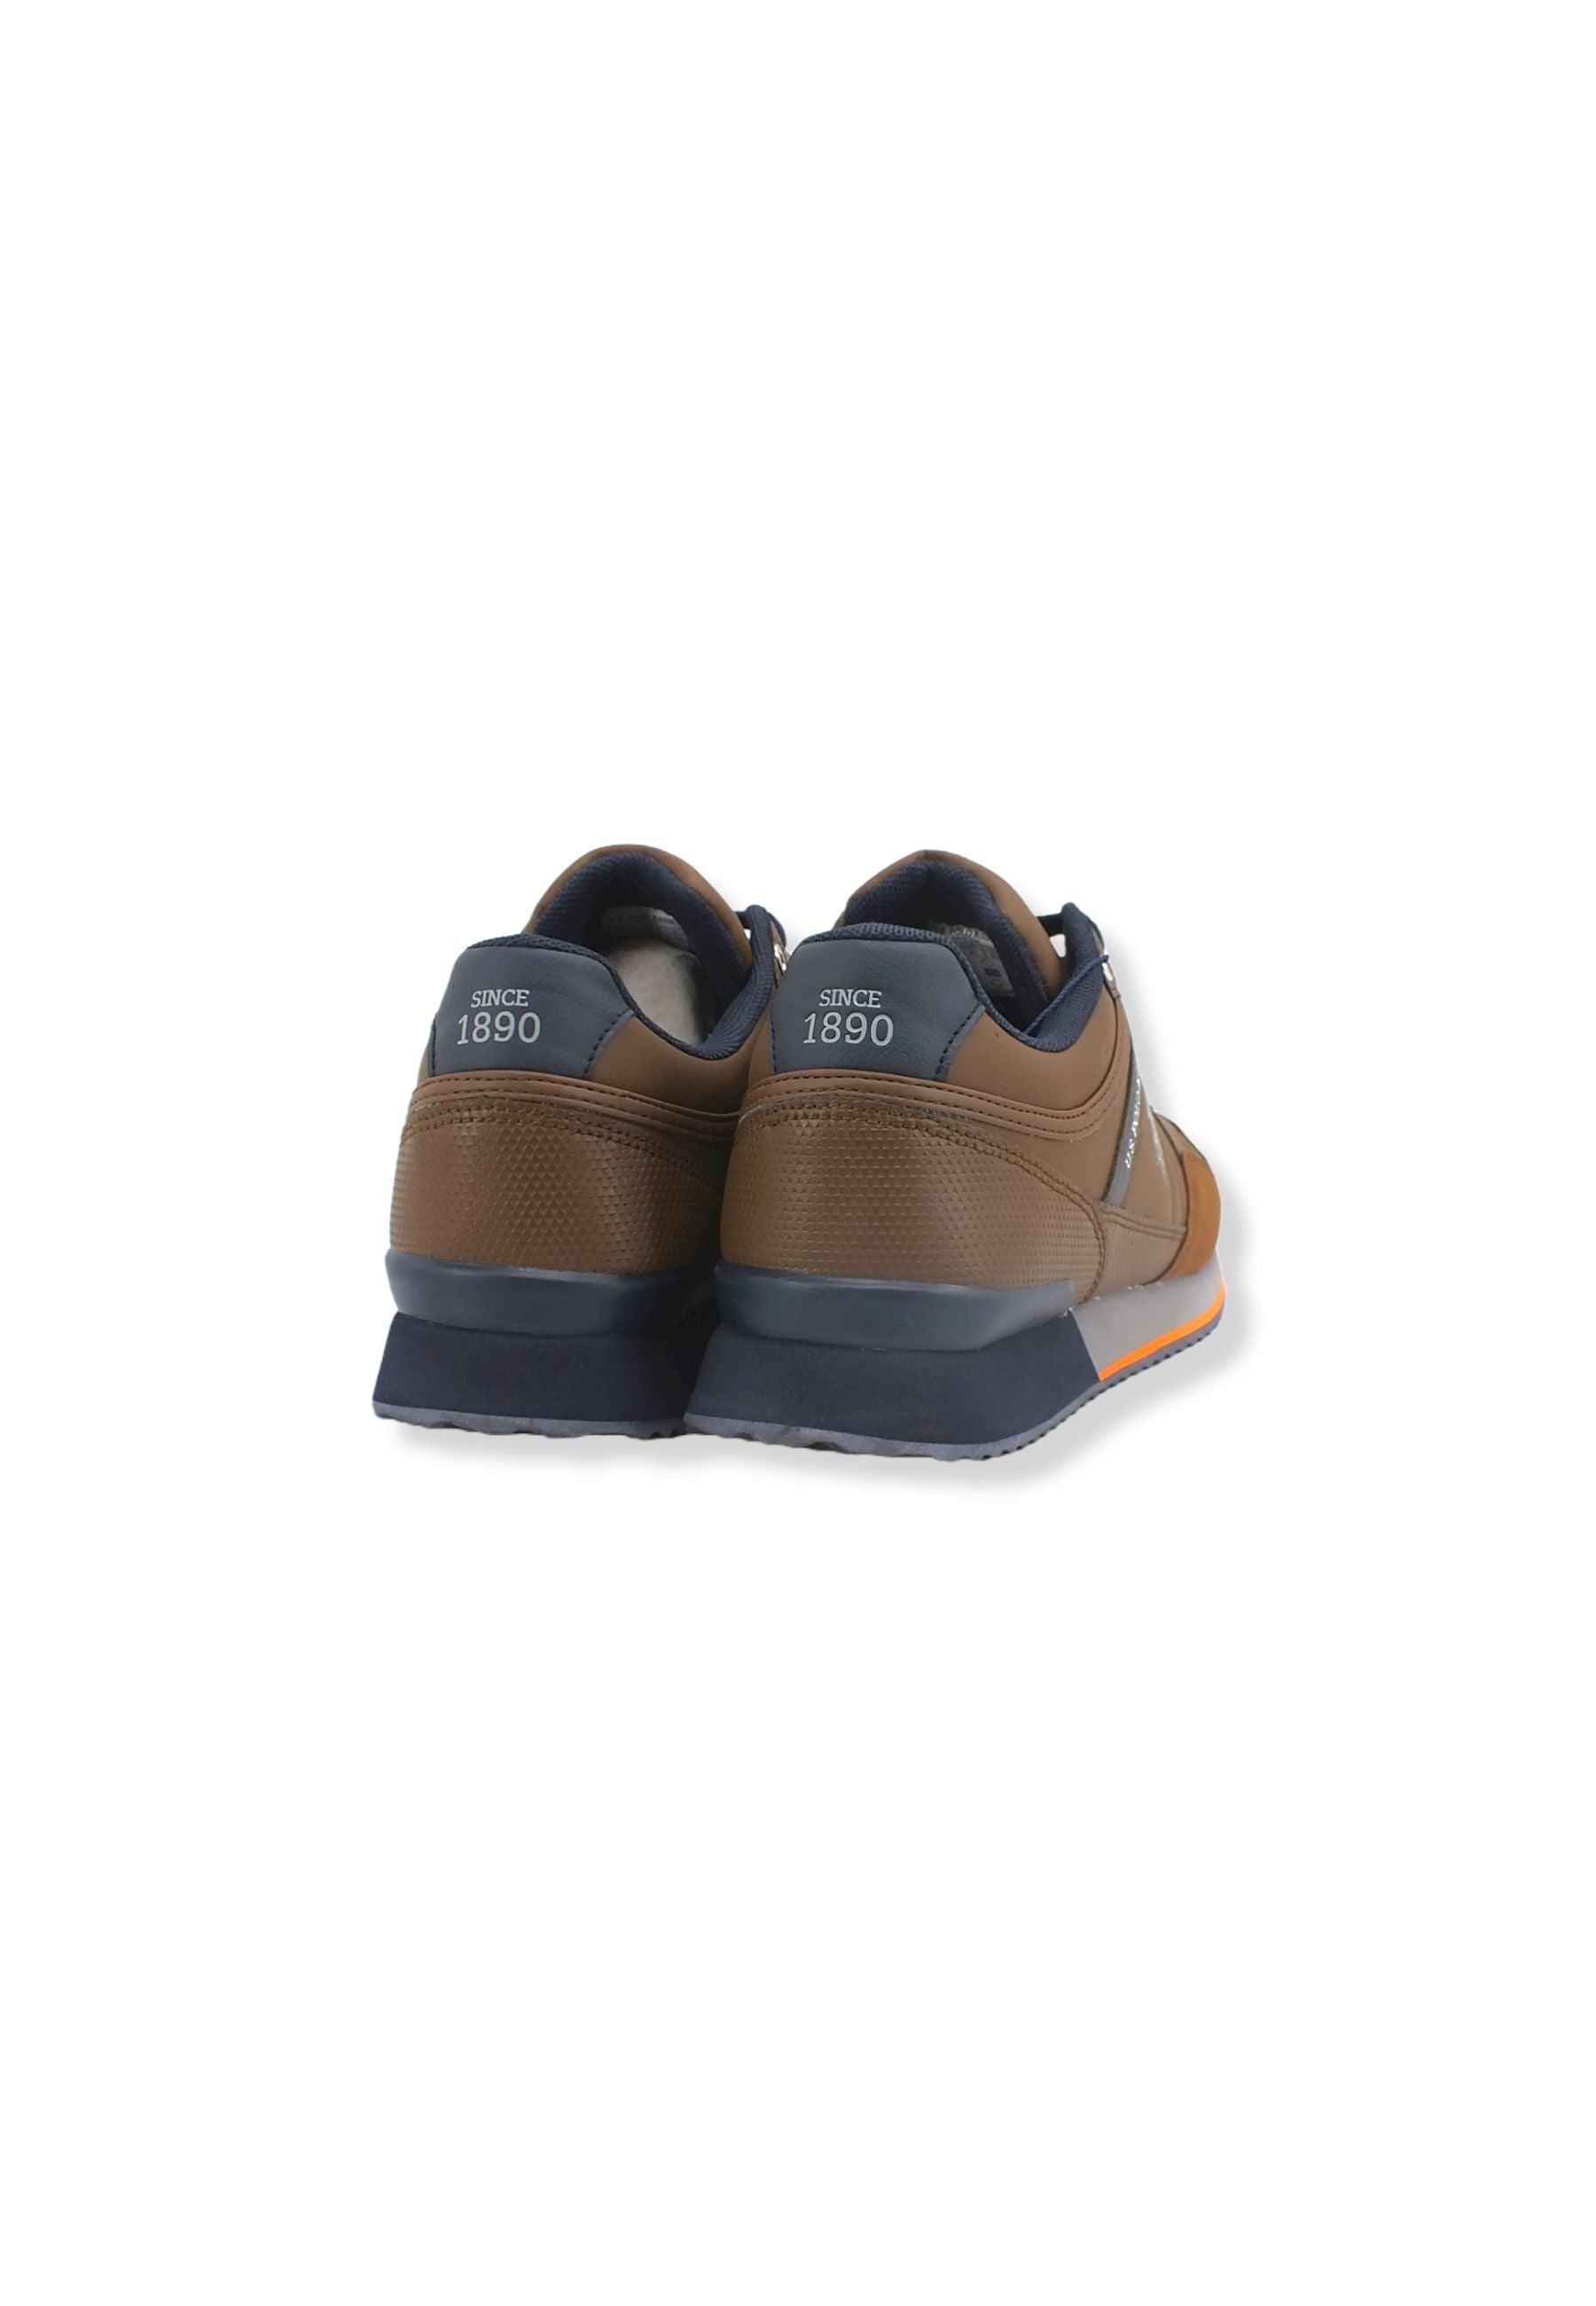 U.S. POLO ASSN. Sneaker Running Uomo Brown GARMY001A - Sandrini Calzature e Abbigliamento